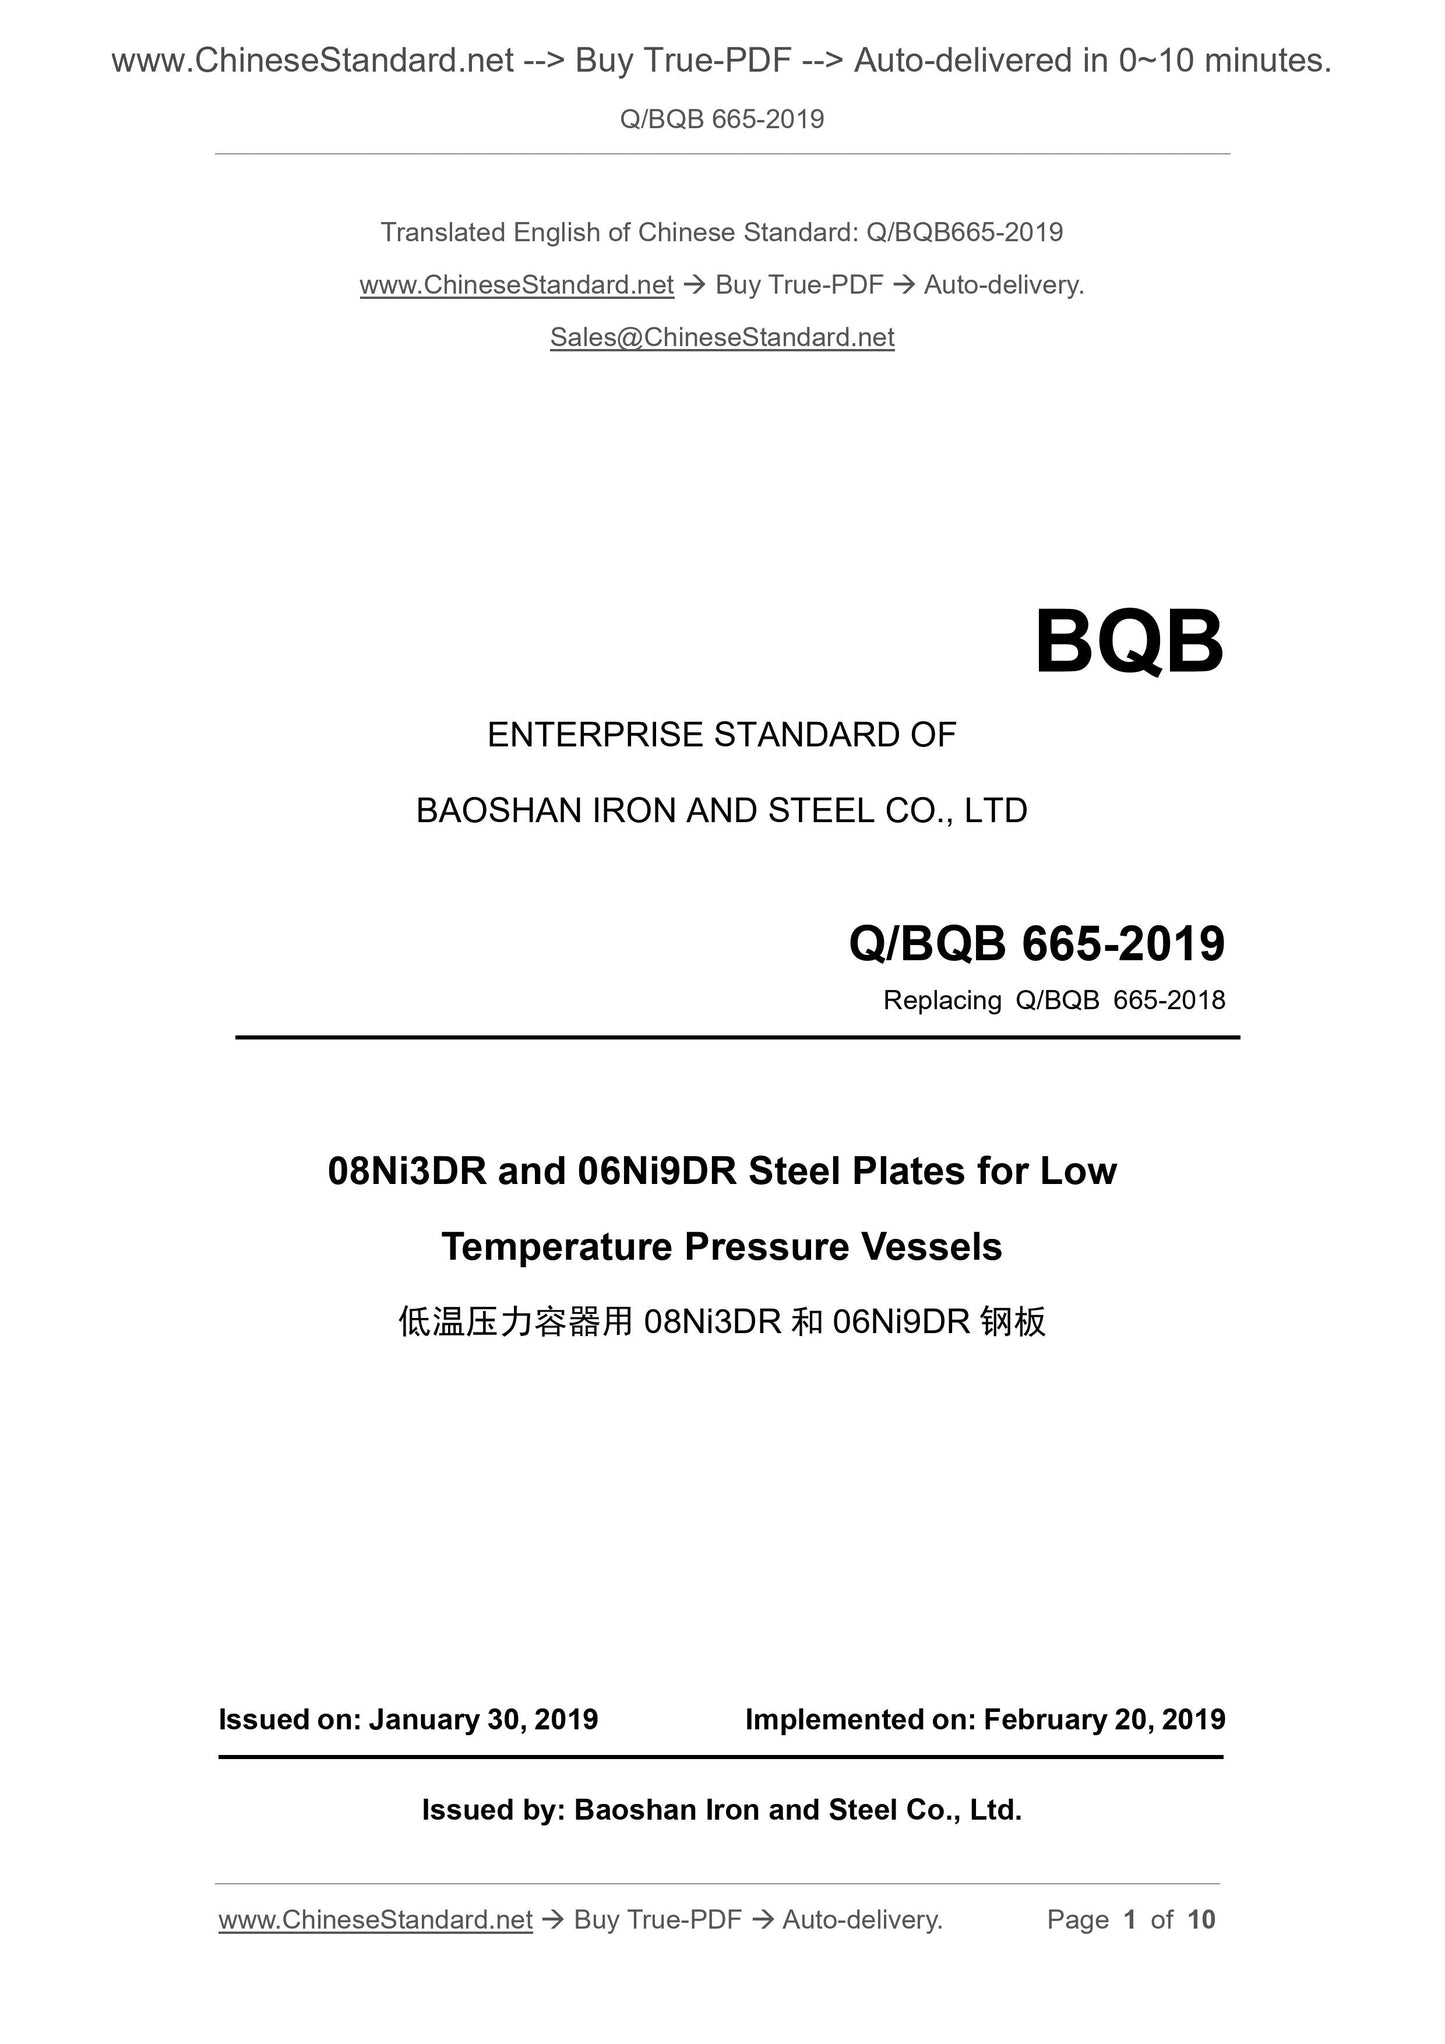 Q/BQB 665-2019 Page 1